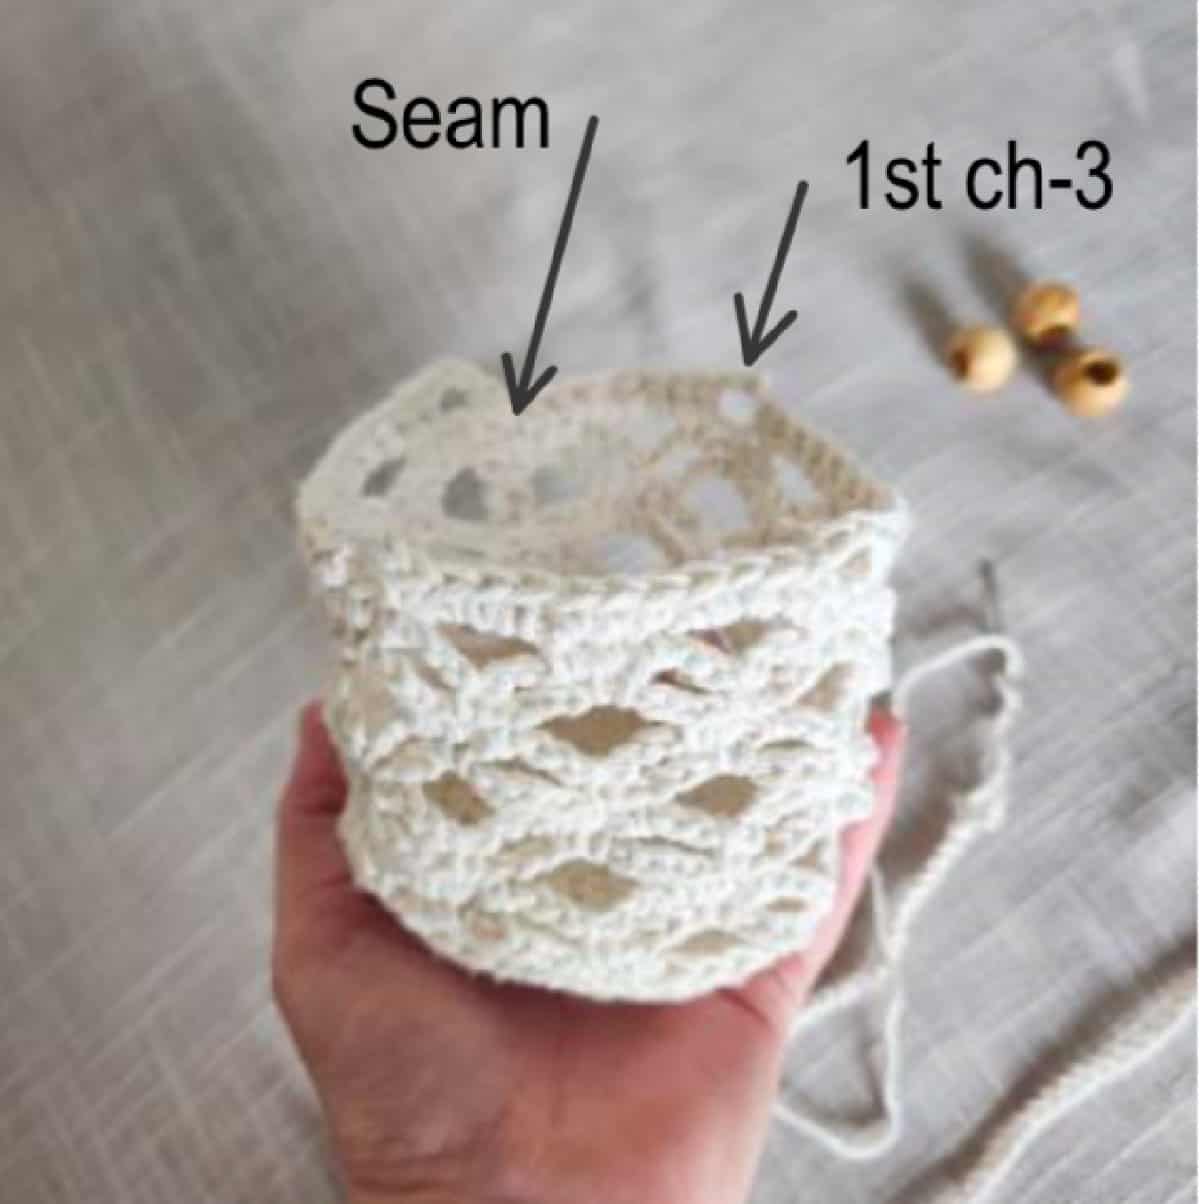 Hand holding crochet plant hanger basket.